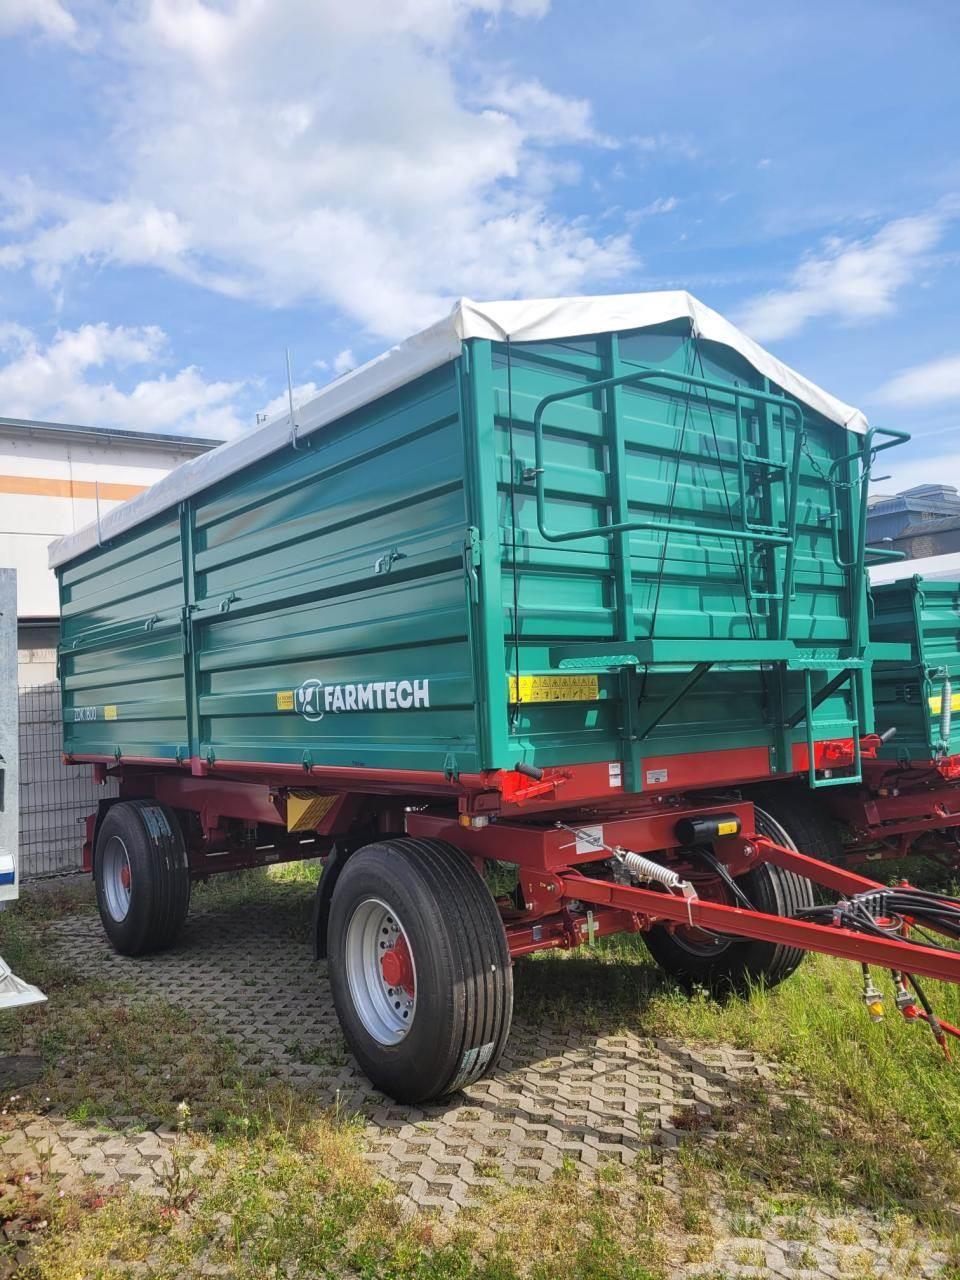 Farmtech ZDK 1800 Tipper trailers